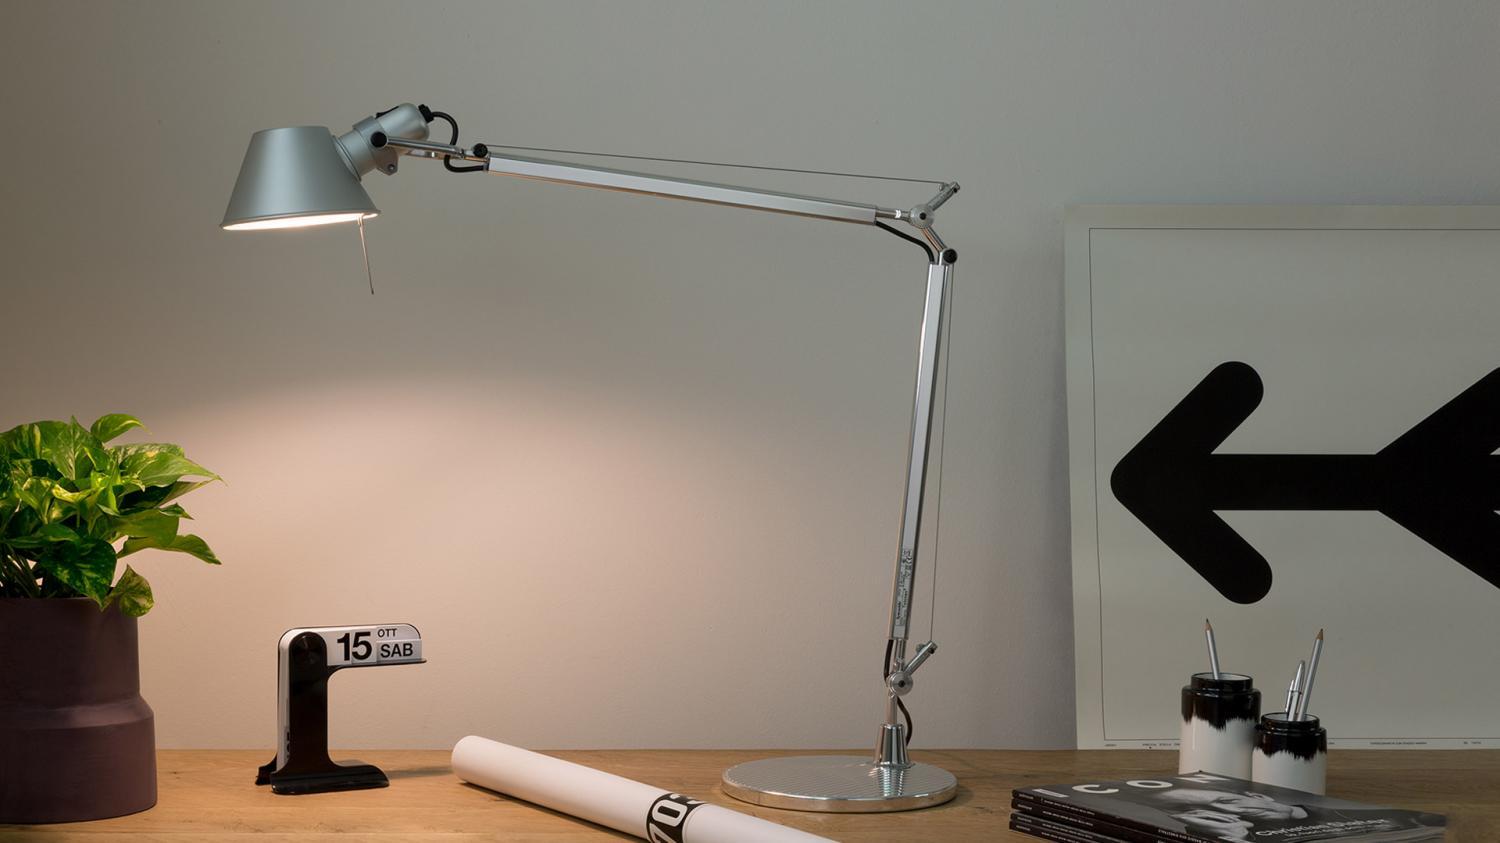 Tolomeo stolní lampa s detektorem přítomnosti LED 2700K - tělo lampy - ARTEMIDE